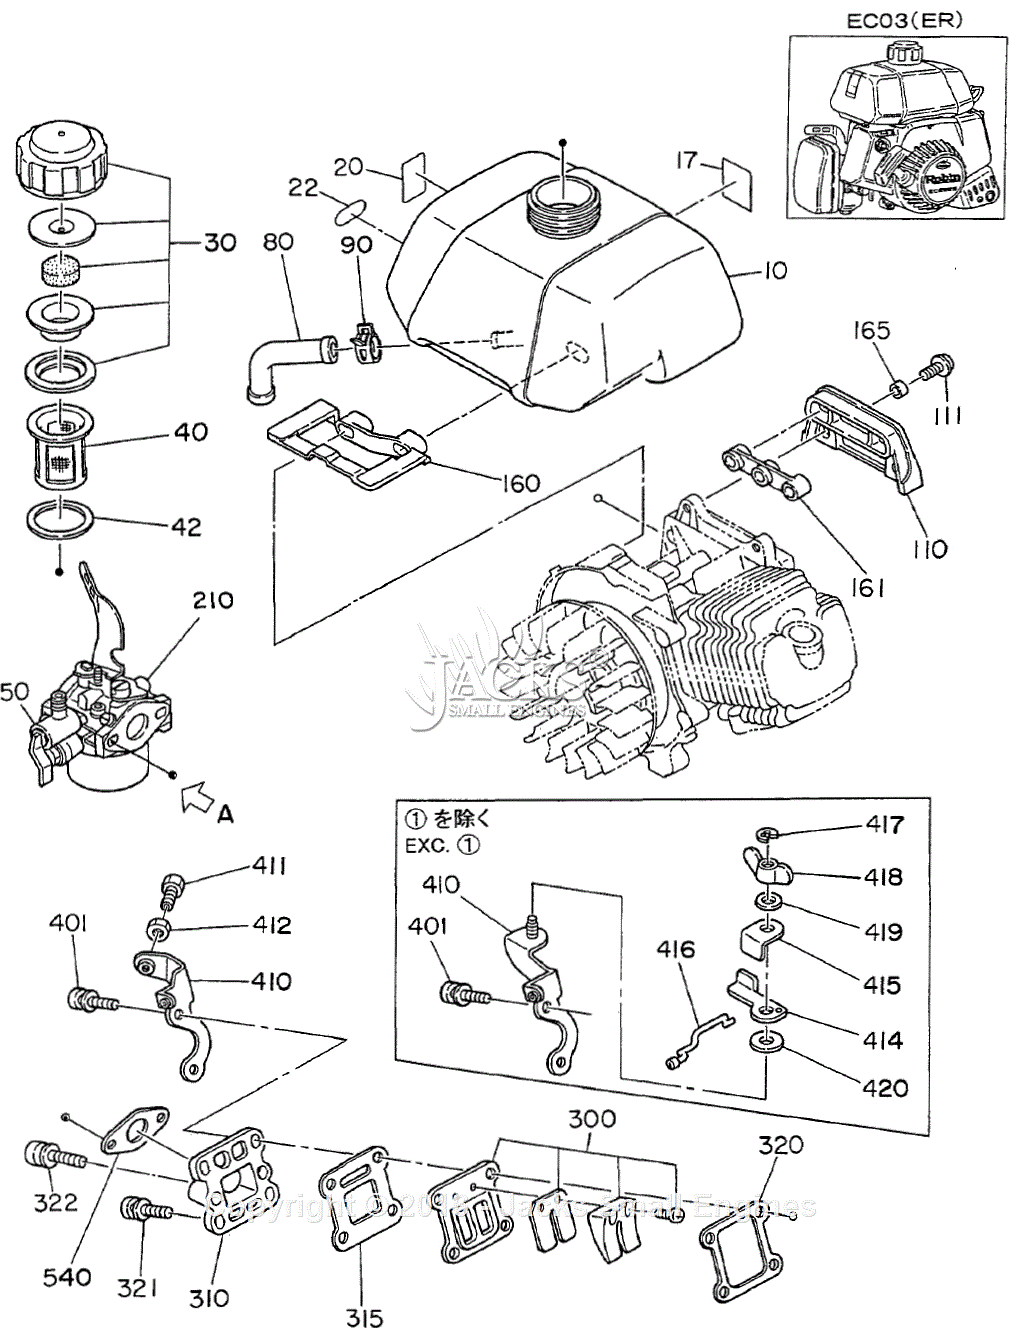 Robin/Subaru EC03 Parts Diagram for Fuel Tank/Carburetor (EC03ER)